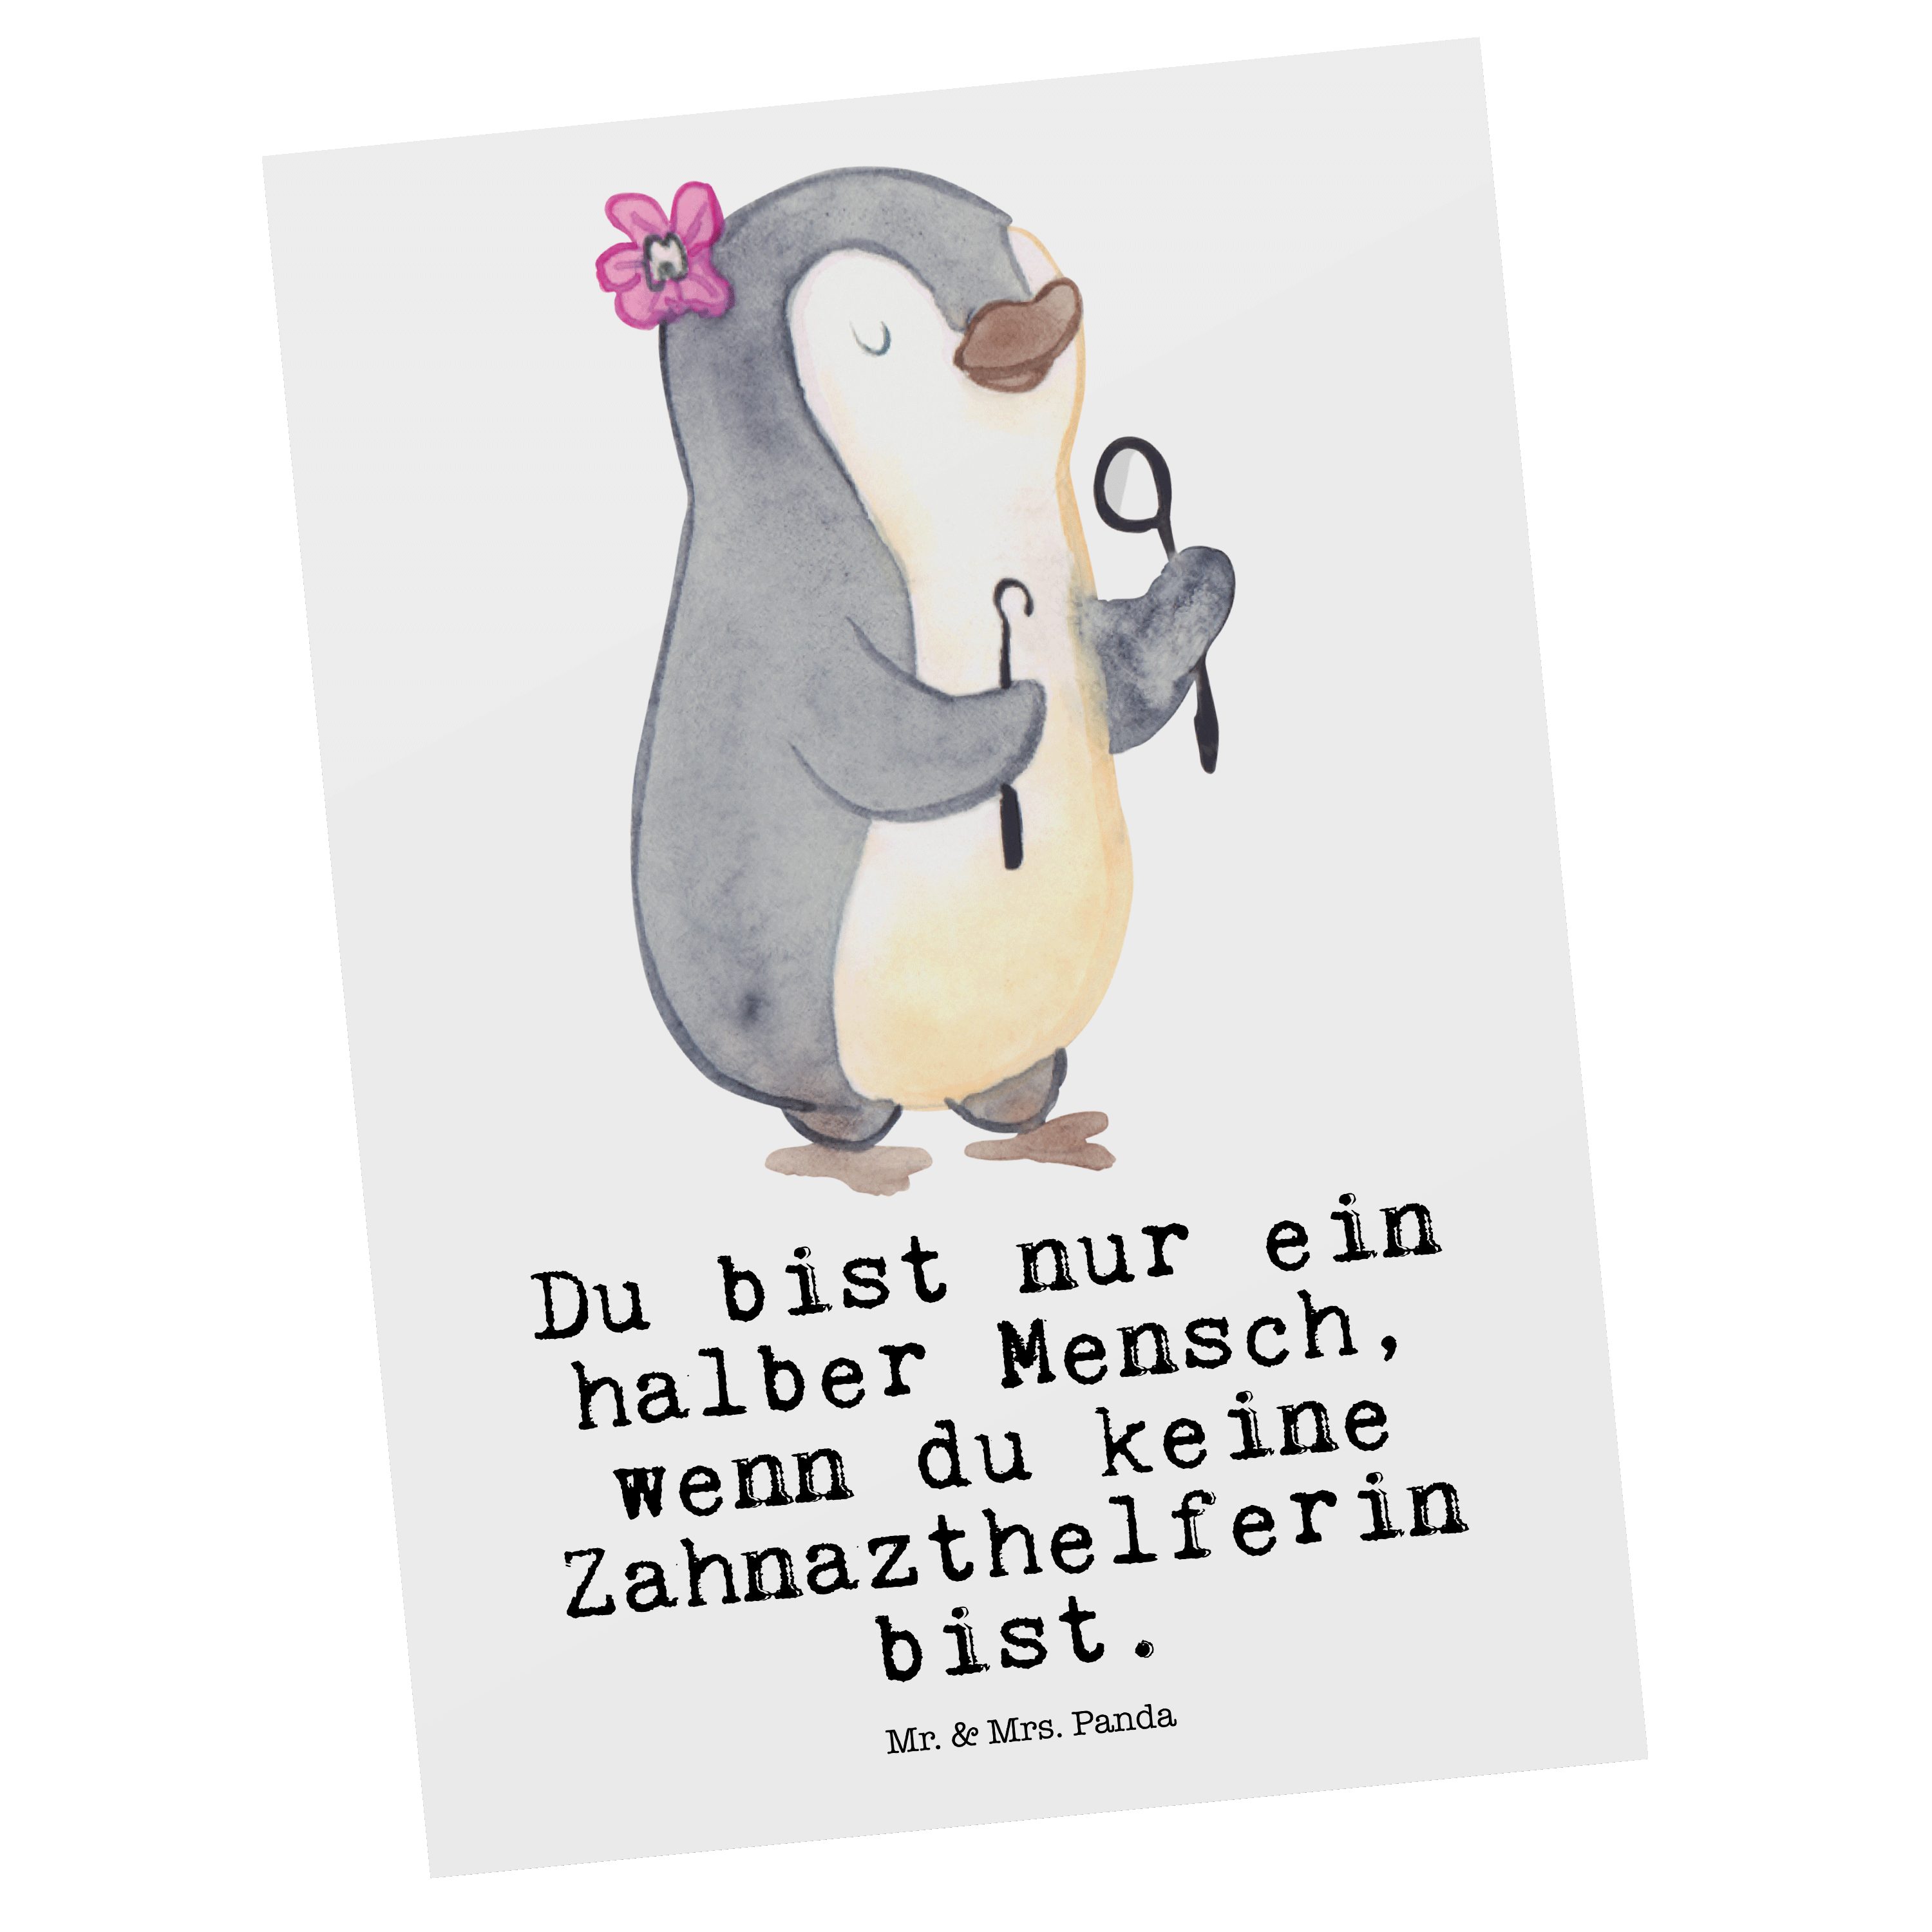 Mr. & Mrs. Panda Postkarte Zahnarzthelferin mit Herz - Weiß - Geschenk, Danke, Einladung, Grußka